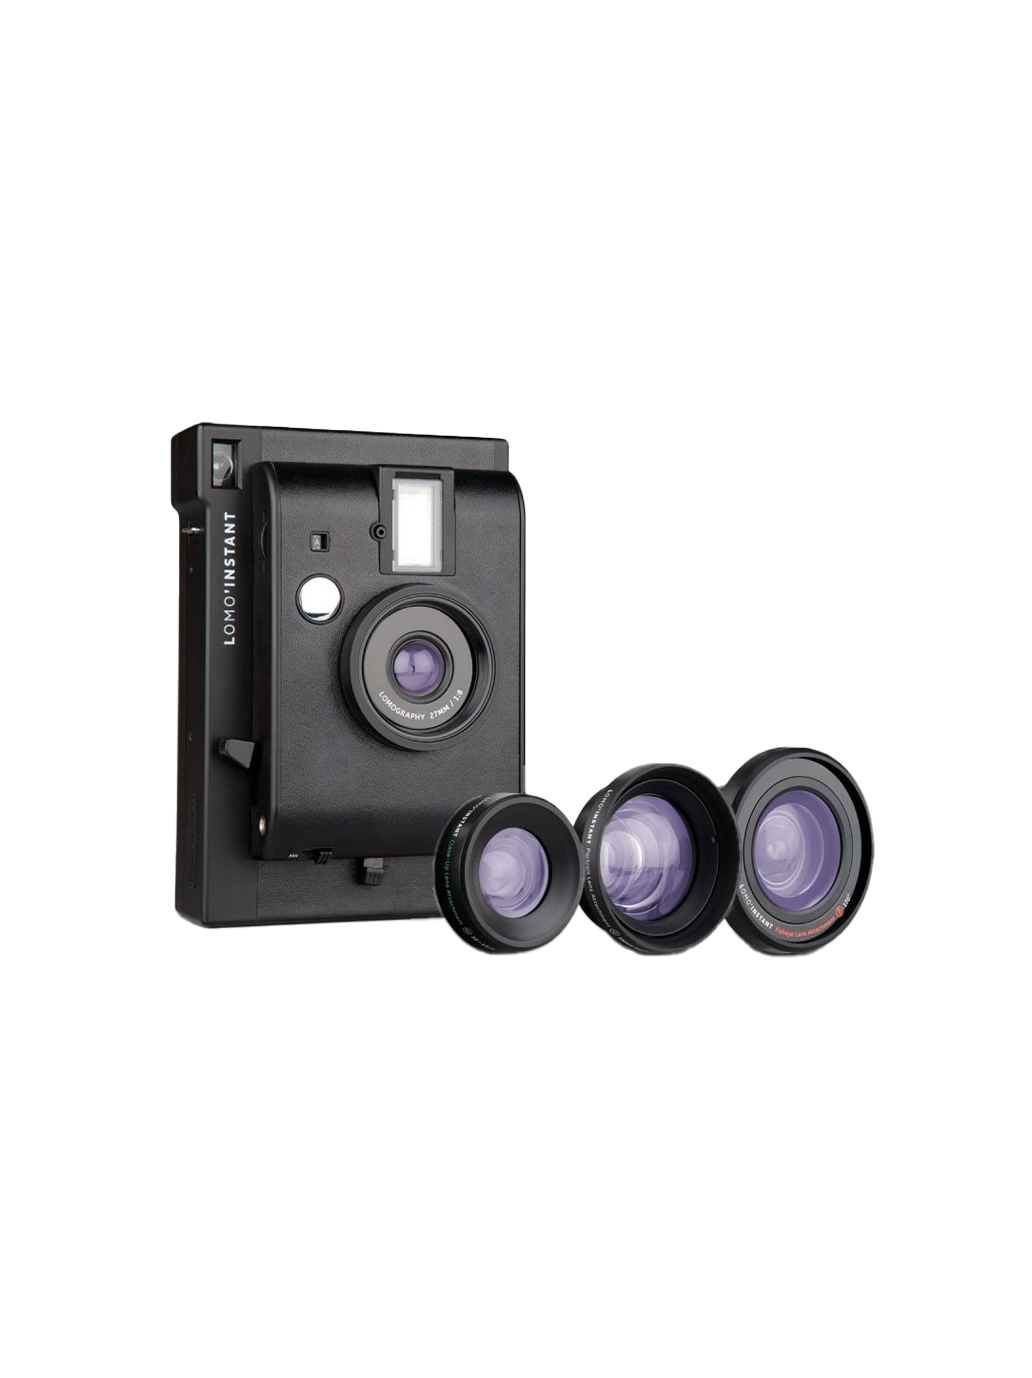 Aparat natychmiastowy z soczewkami Lomo’Instant Camera